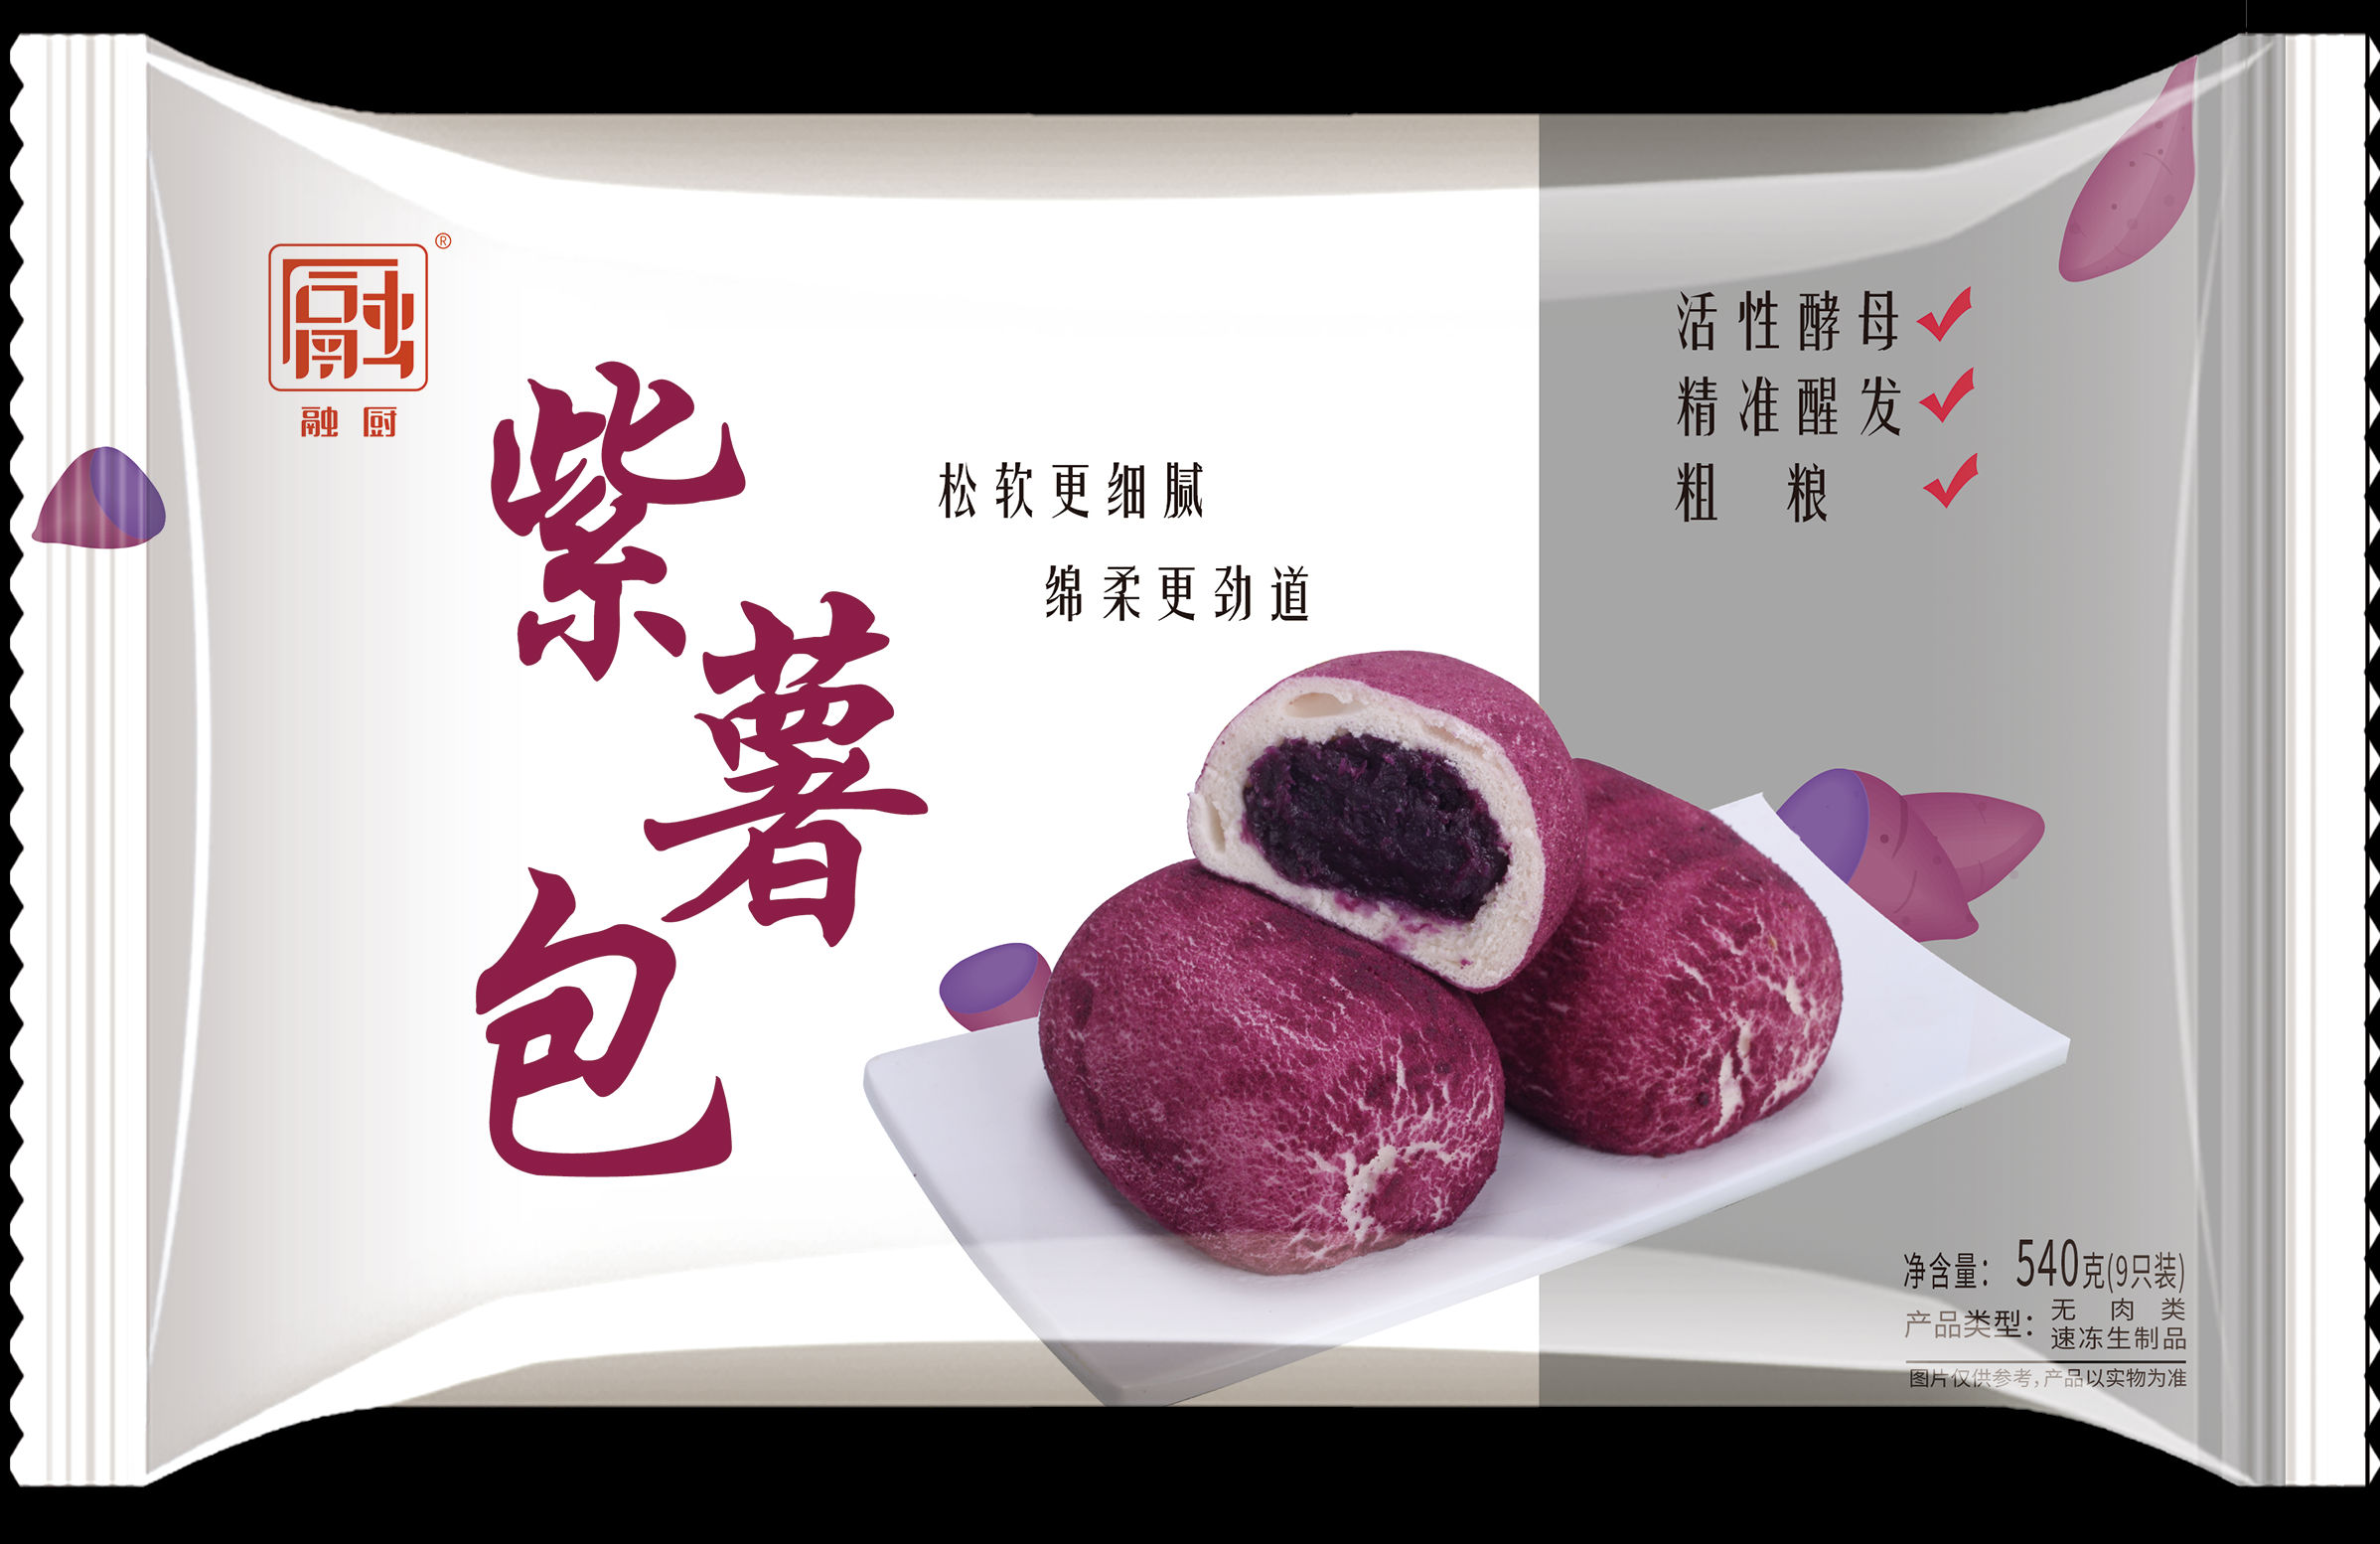 自创紫薯面包做法与图解_紫薯面包_货货的日志_美食天下